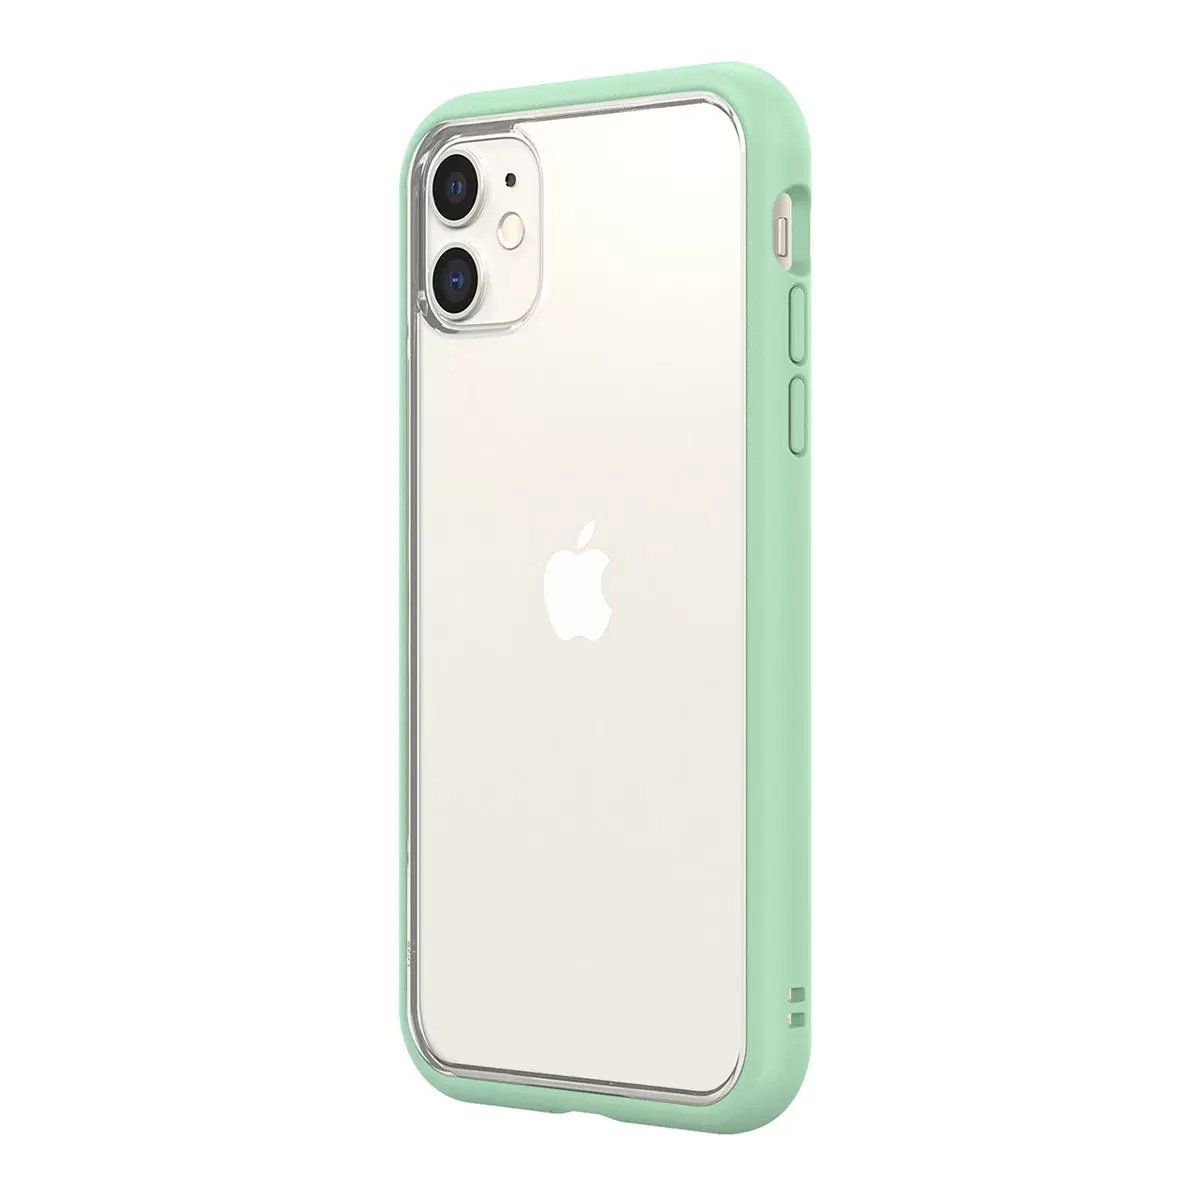 犀牛盾 iPhone 11 Mod NX 手機殼 + 9H 3D滿版玻璃保護貼 薄荷綠